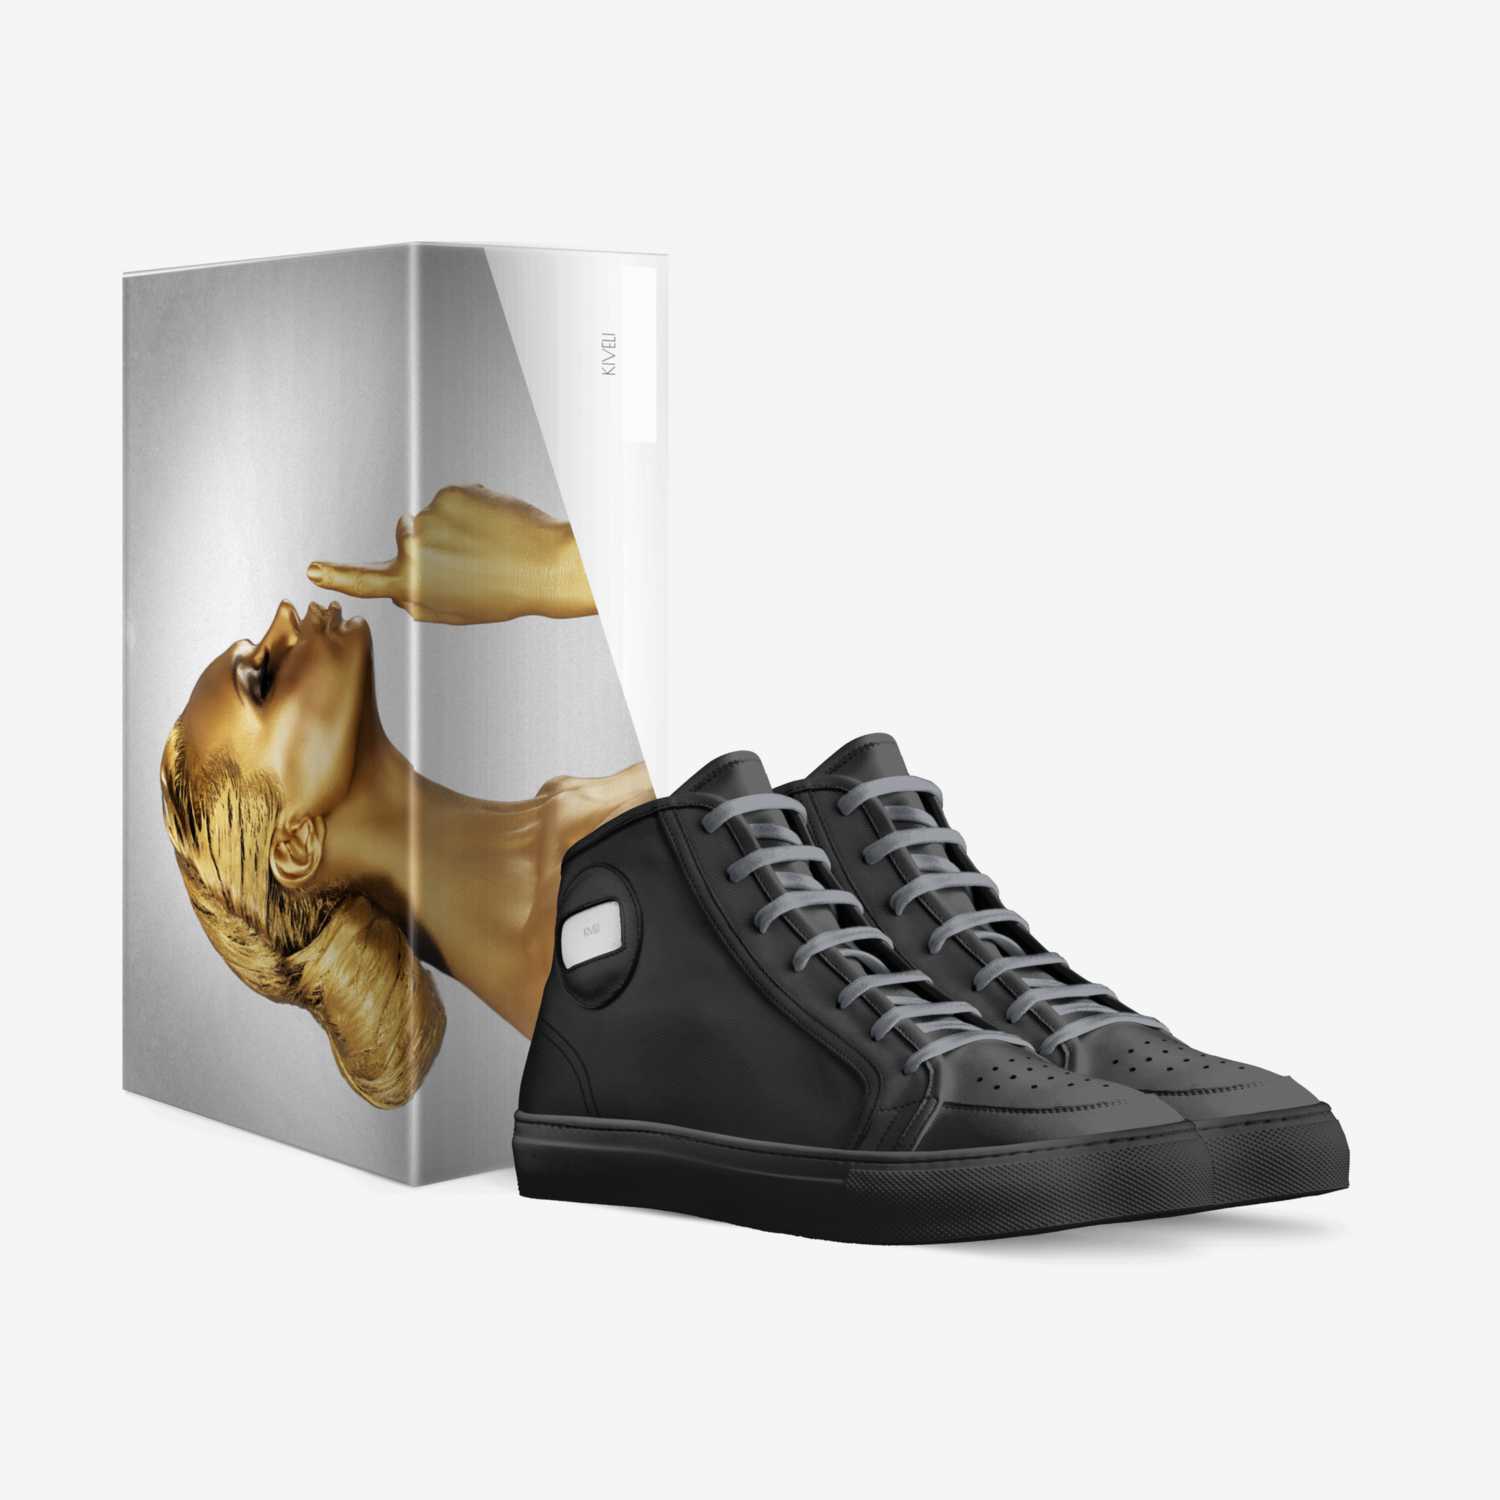 Kiveli custom made in Italy shoes by Olivia Ward | Box view